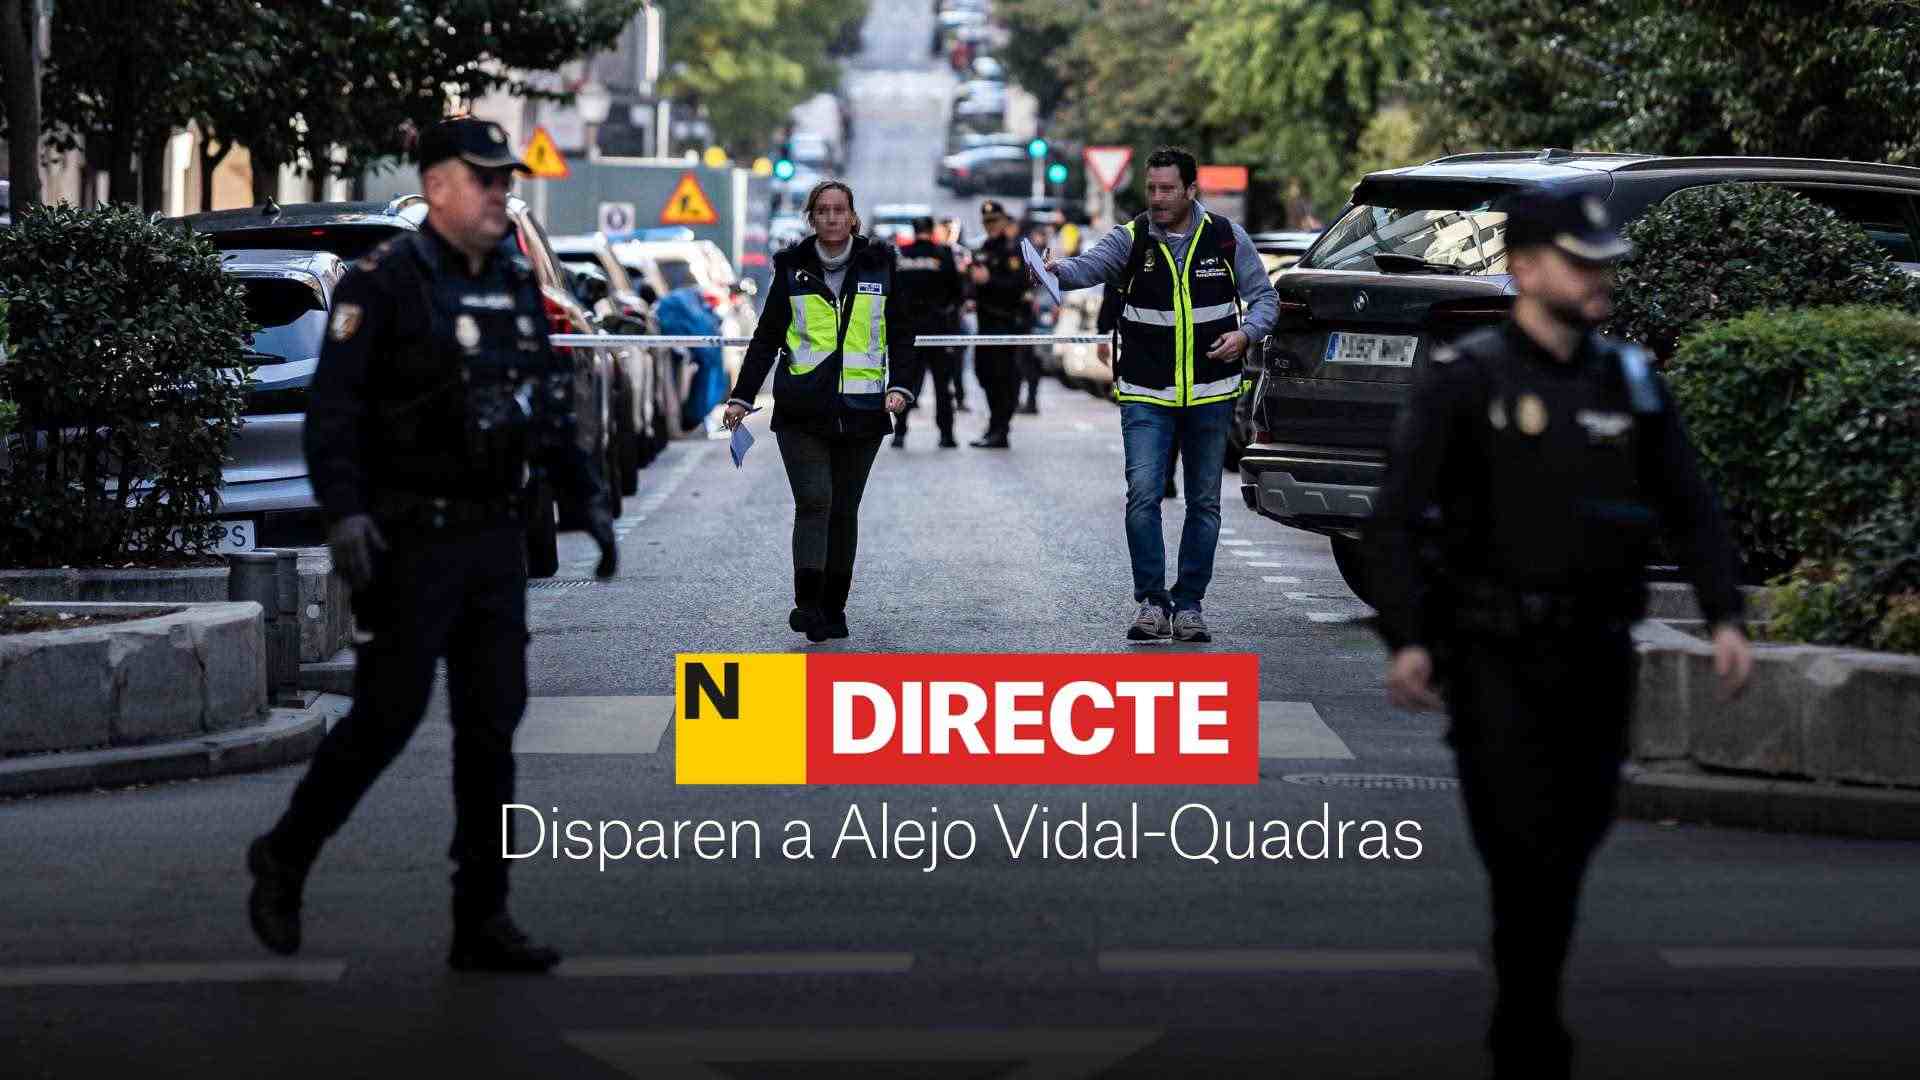 Disparan a Alejo Vidal-Quadras en Madrid, DIRECTO | Última hora del estado del fundador de Vox